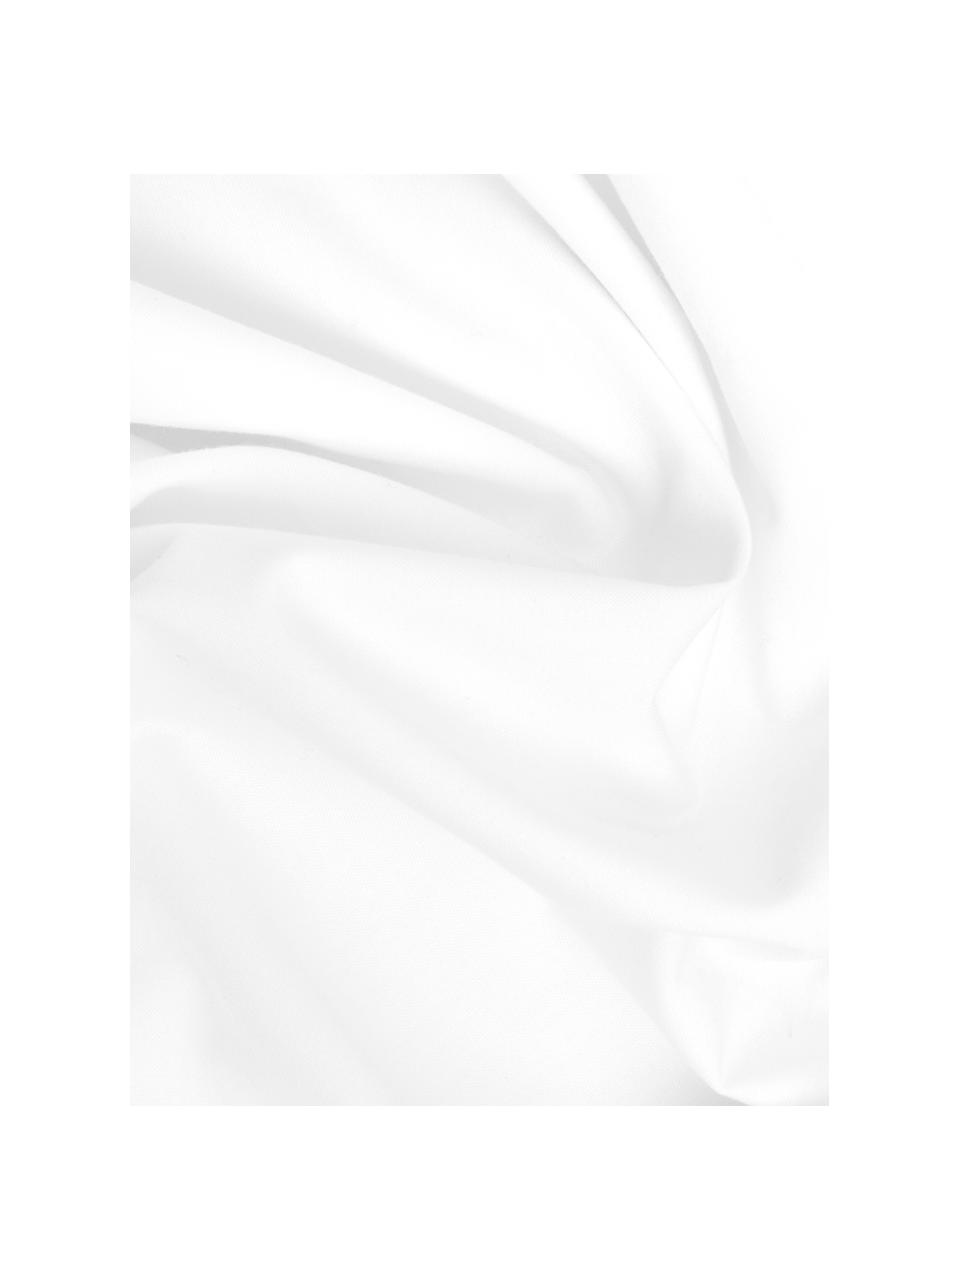 Baumwollperkal-Kissenbezug Elsie in Weiss, 65 x 65 cm, Webart: Perkal Fadendichte 200 TC, Weiss, B 65 x L 65 cm